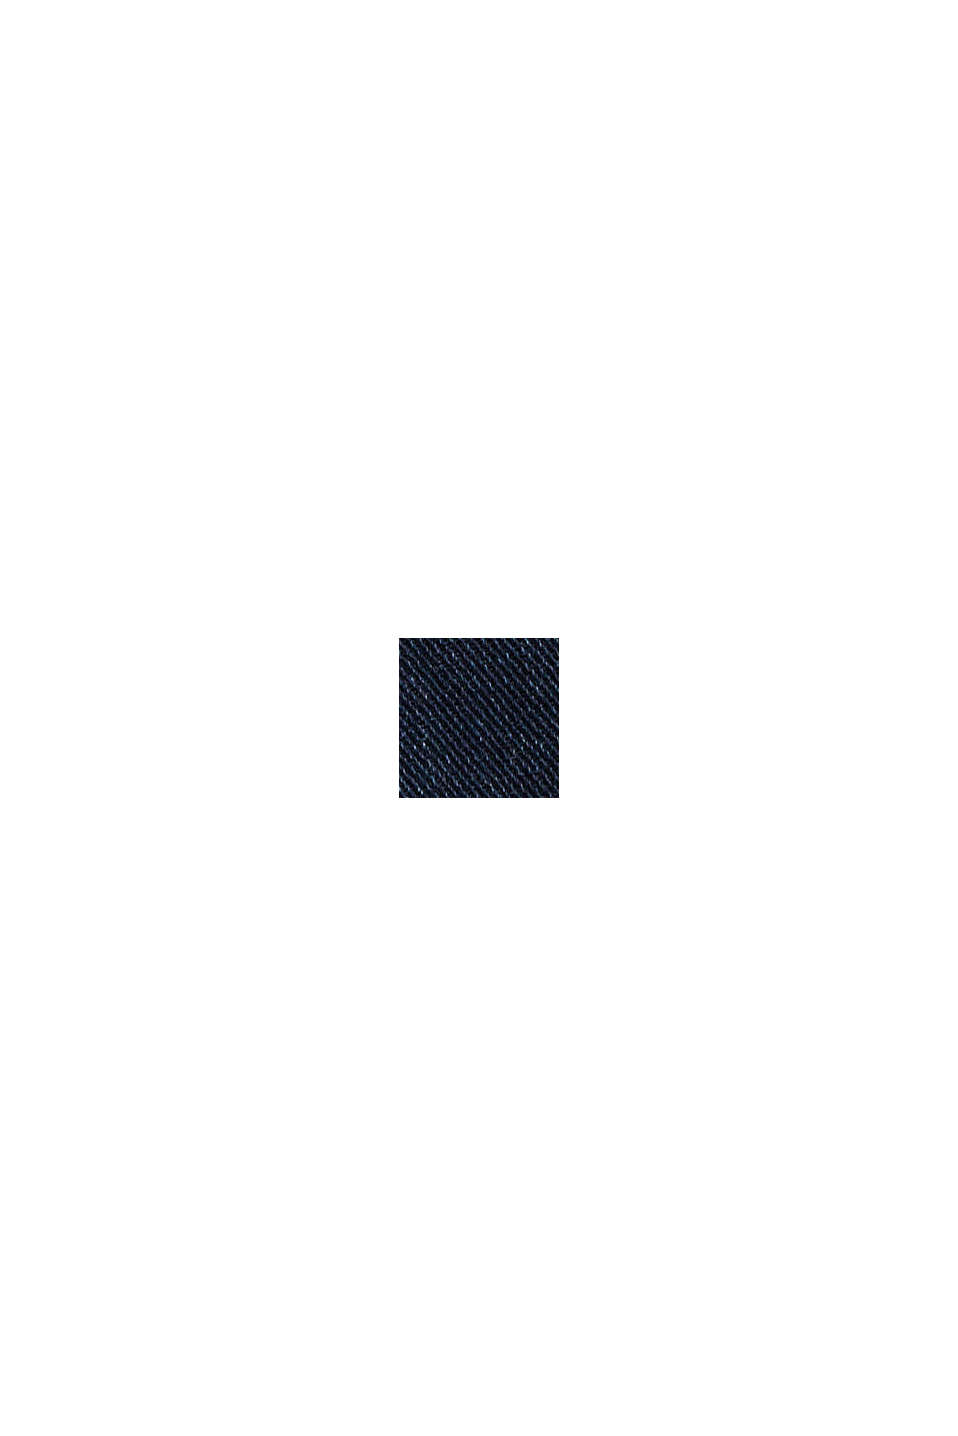 Jeans elasticizzati in cotone biologico, BLUE BLACK, swatch